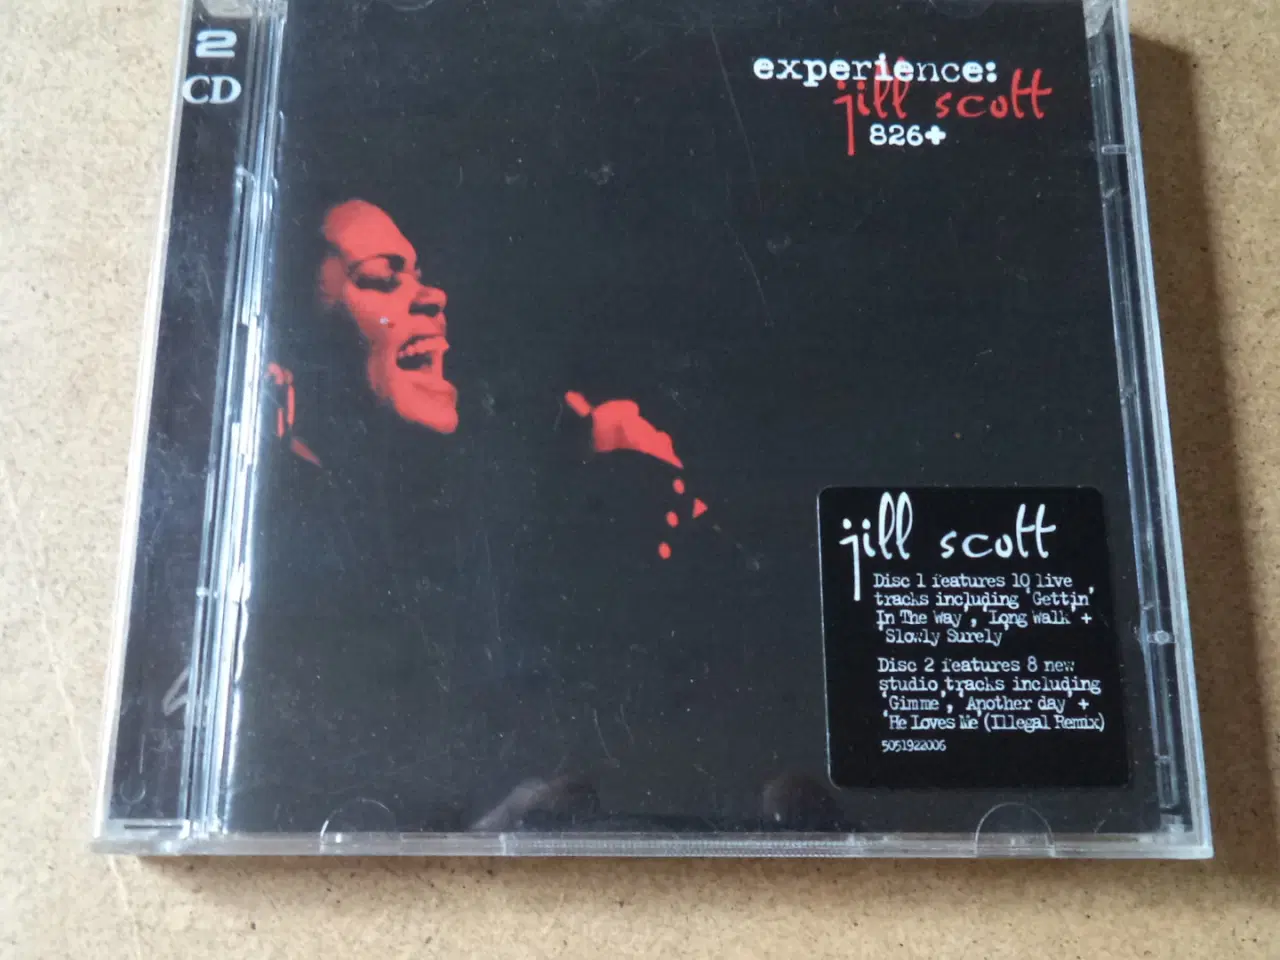 Billede 1 - Jill Scott ** Experiences: 826+ (2-CD)            